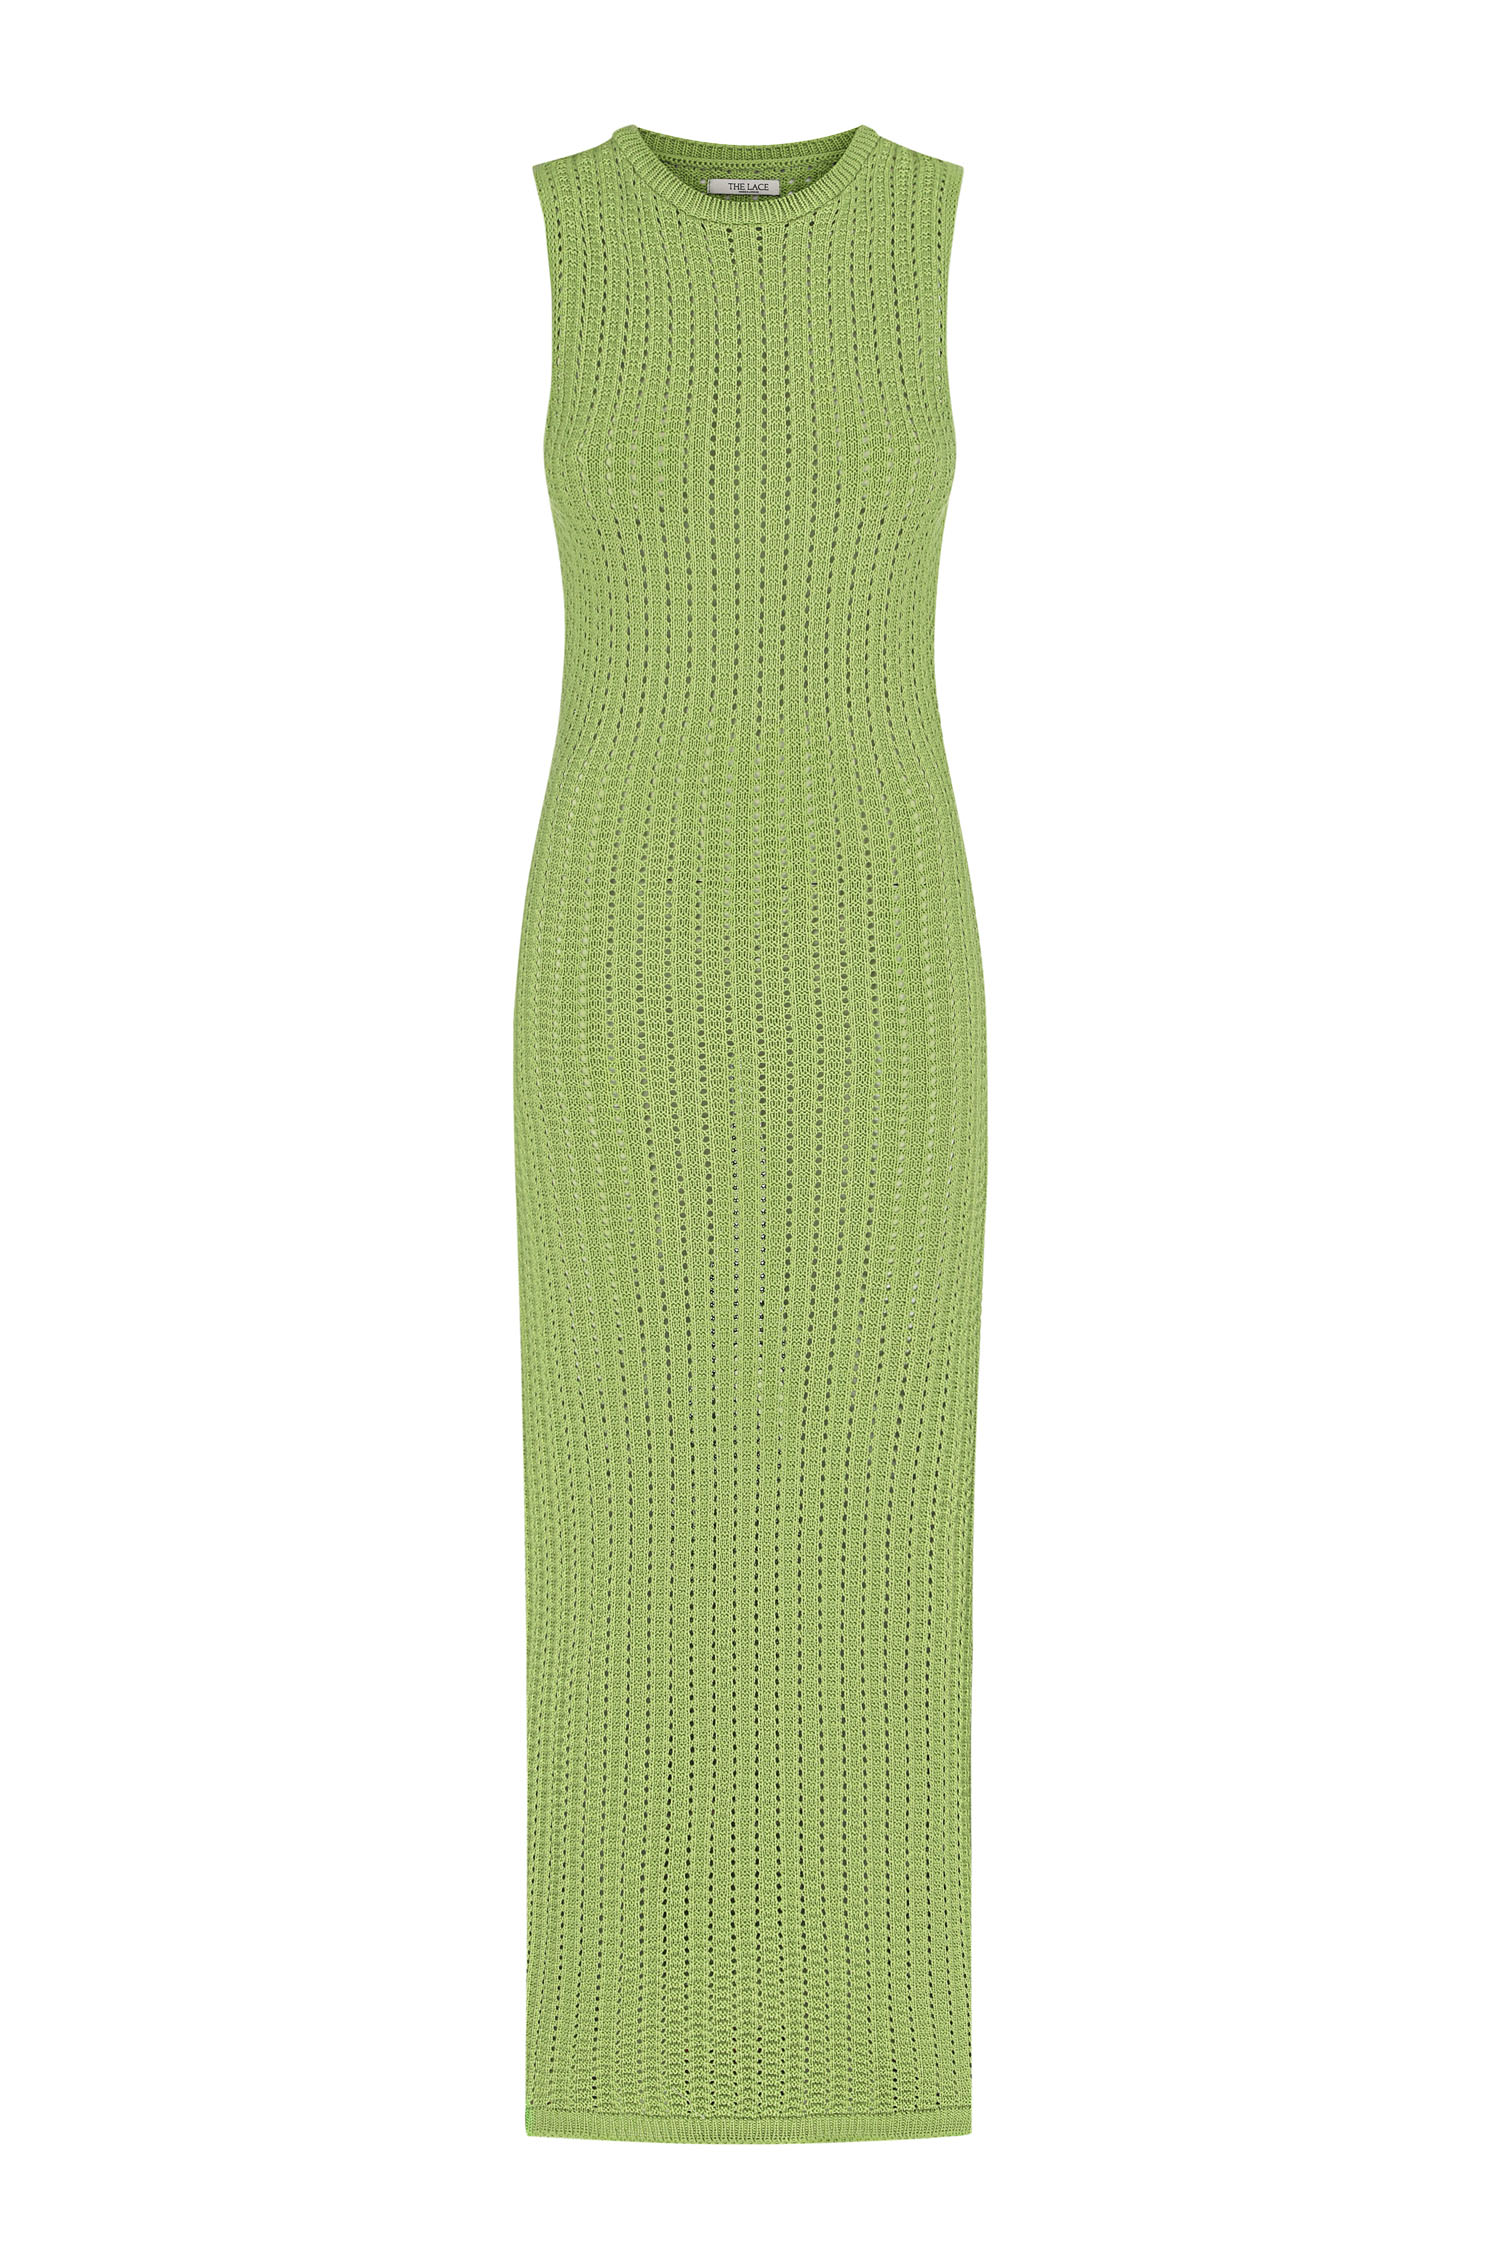 Трикотажна сукня максі з ажурною вʼязкою салатова - THE LACE photo 152679